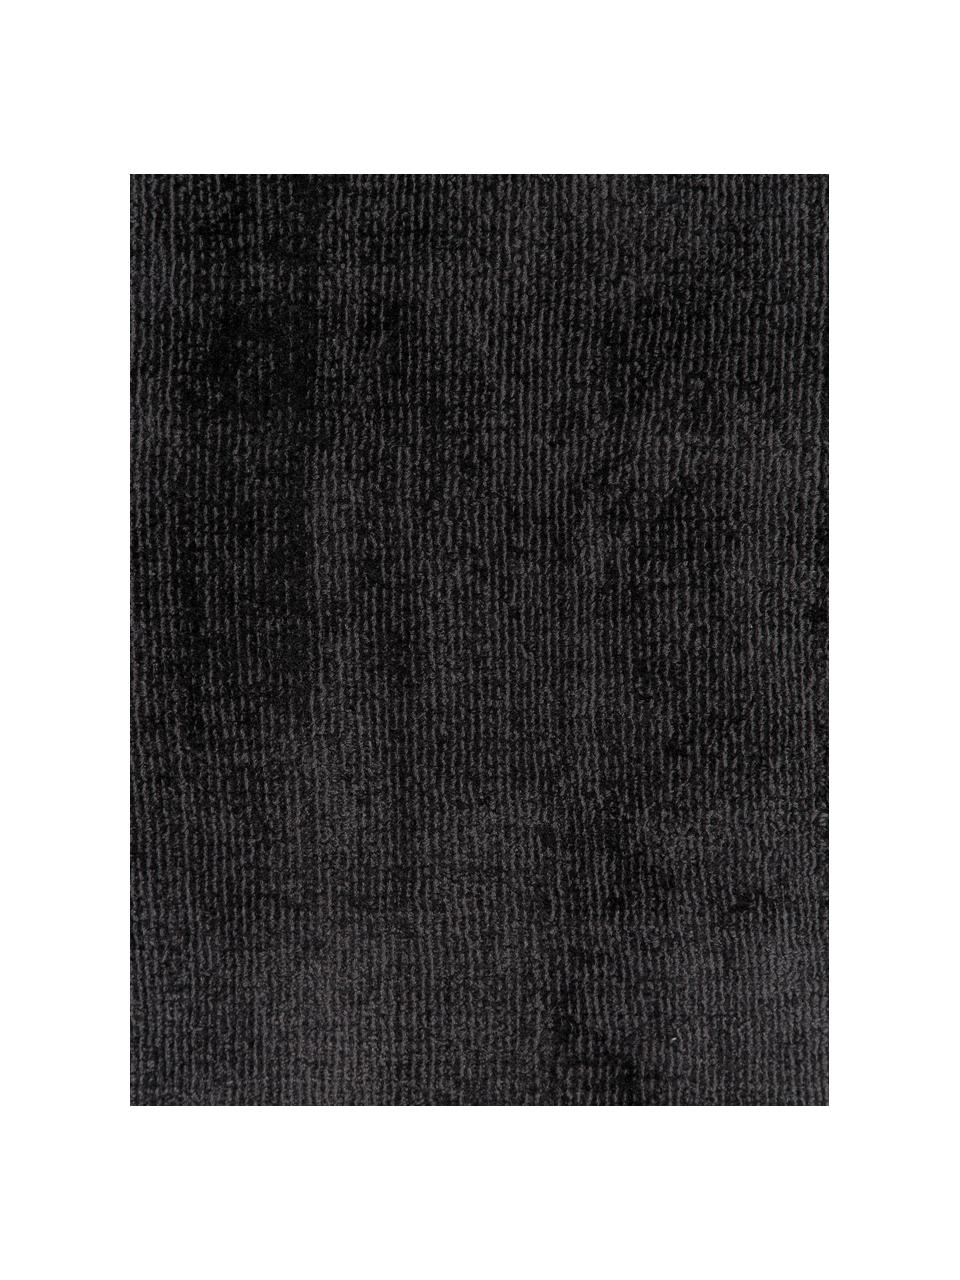 Handgeweven viscose loper Jane in antraciet-zwart, Onderzijde: 100% katoen, Antraciet, B 80 x L 200 cm